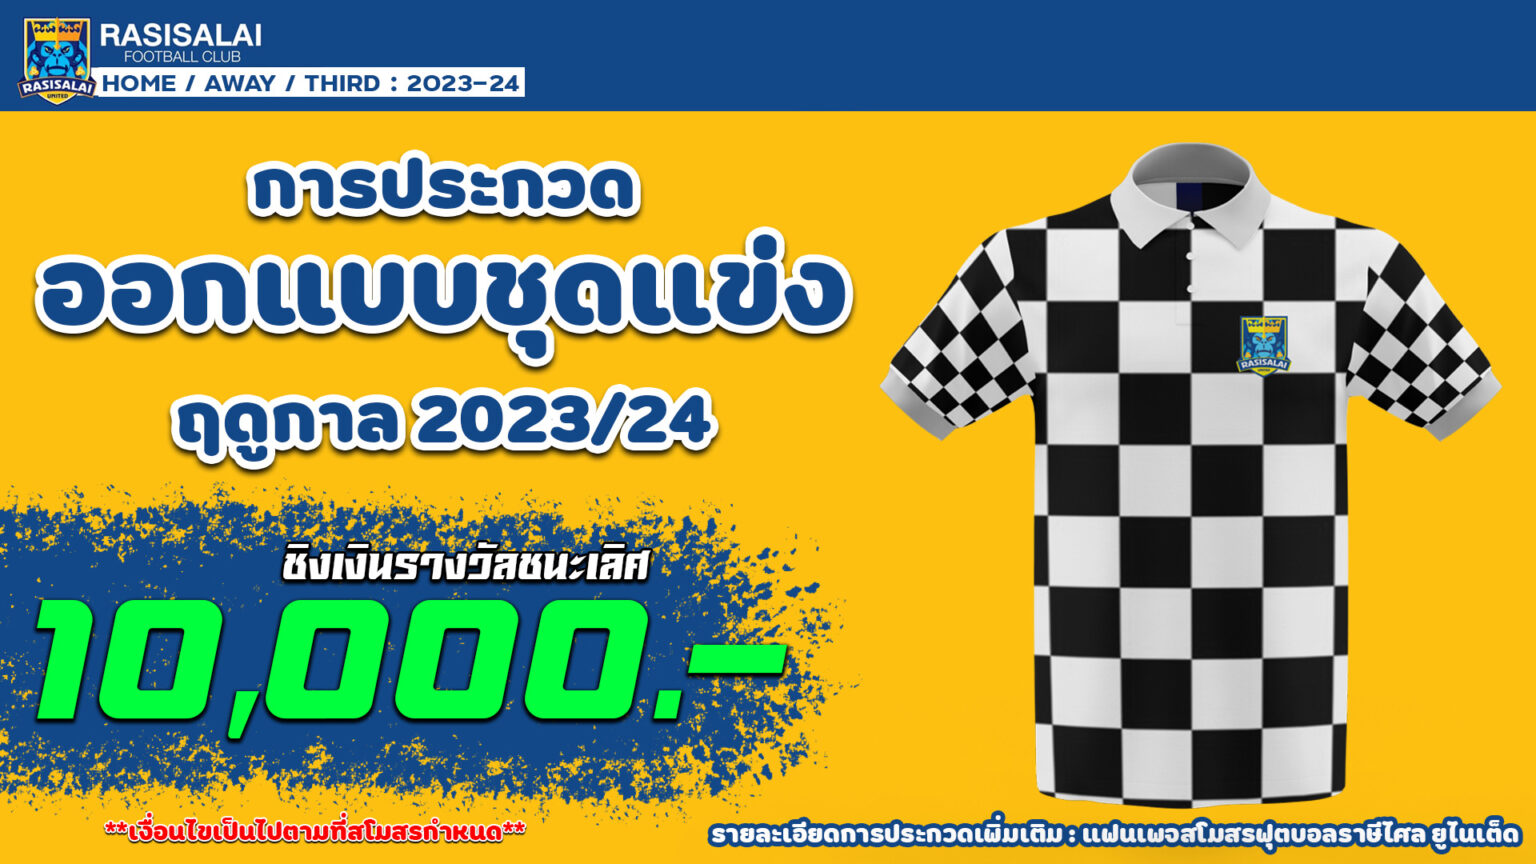 ประกวดออกแบบชุดแข่งขัน สโมสรฟุตบอลราษีไศล ยูไนเต็ด ฤดูกาล 2023/24 - Contest  Thailand แหล่งรวมกิจกรรมการประกวดที่มีประโยชน์ไว้ในที่เดียว